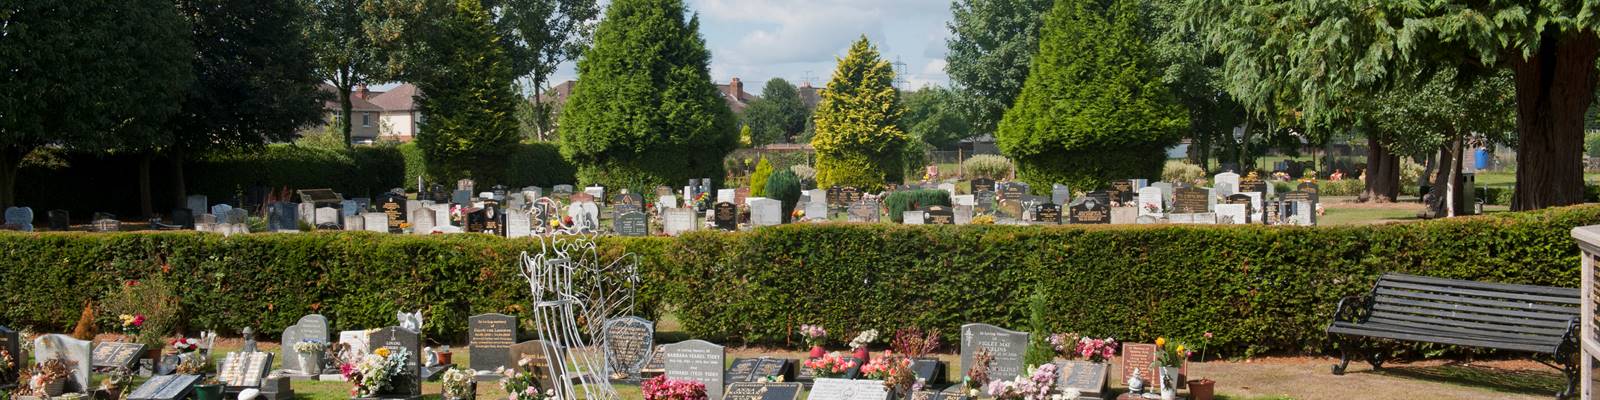 Eastleigh_Brookwood_Cemetery16.jpg